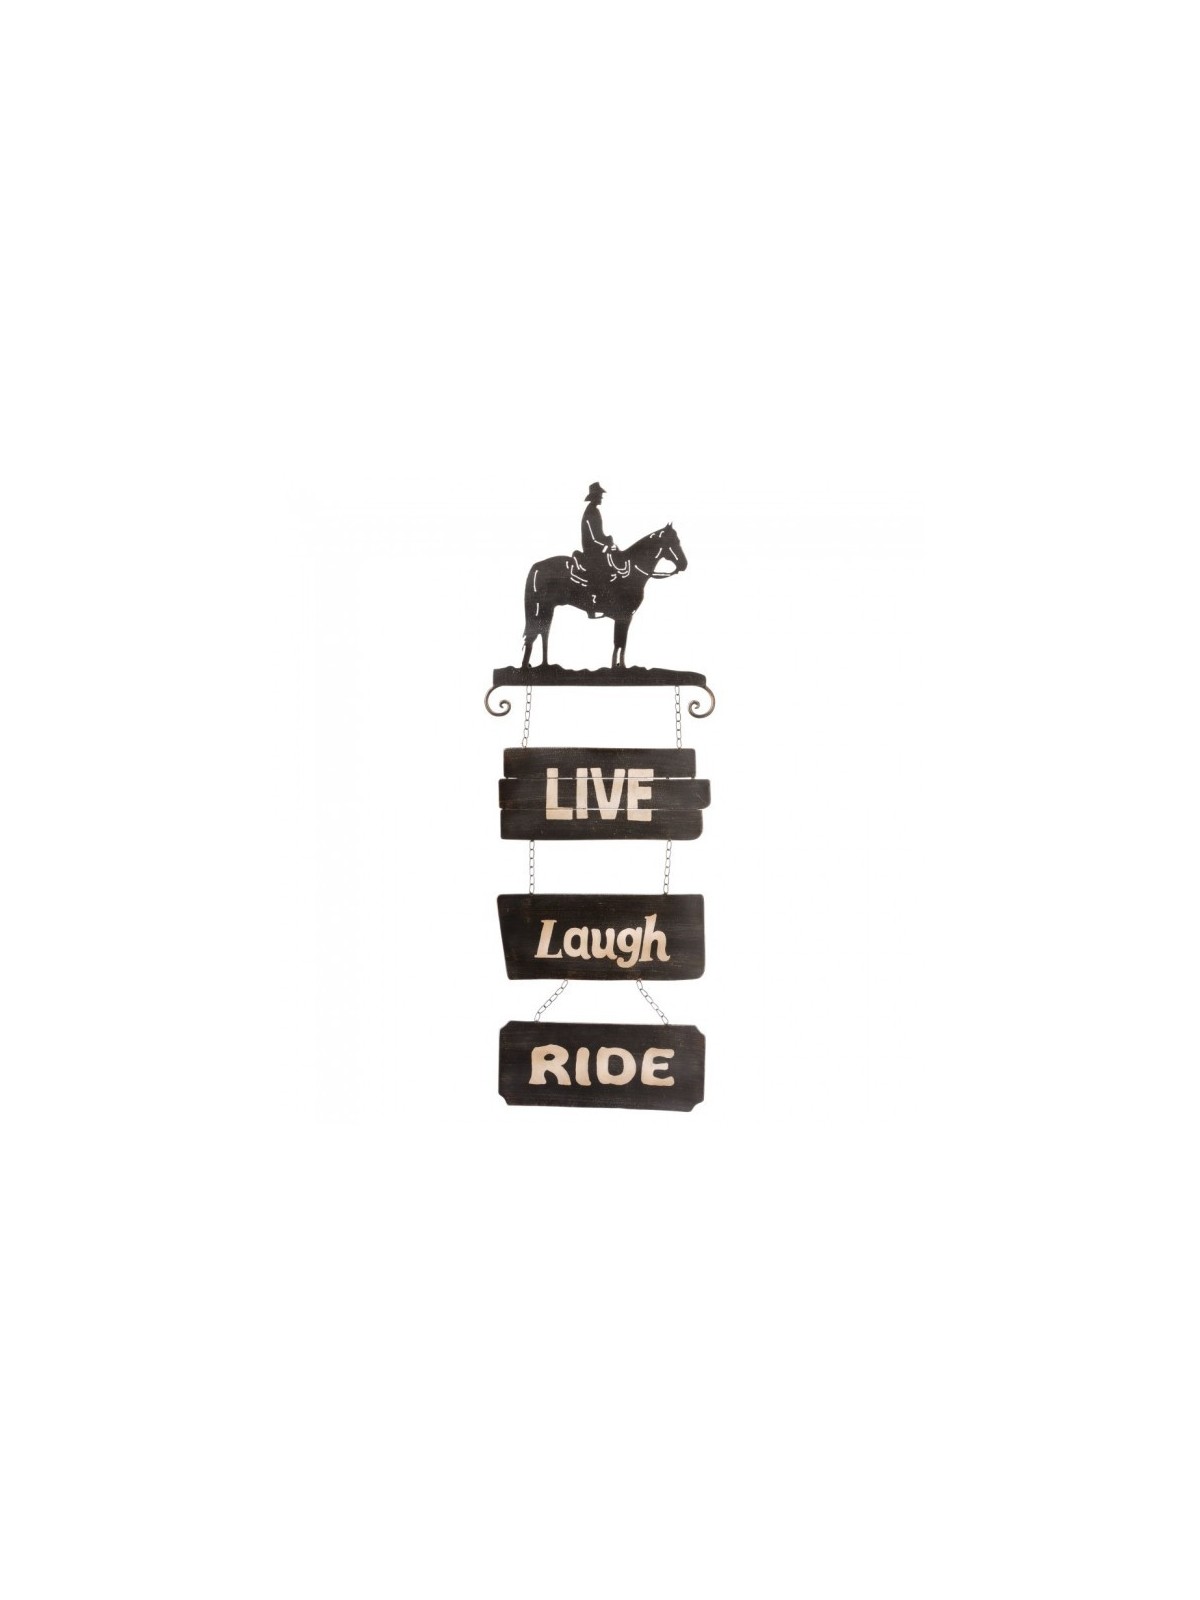 Tough-1 Cowboy Sign Live/Laugh/Ride 87-1912